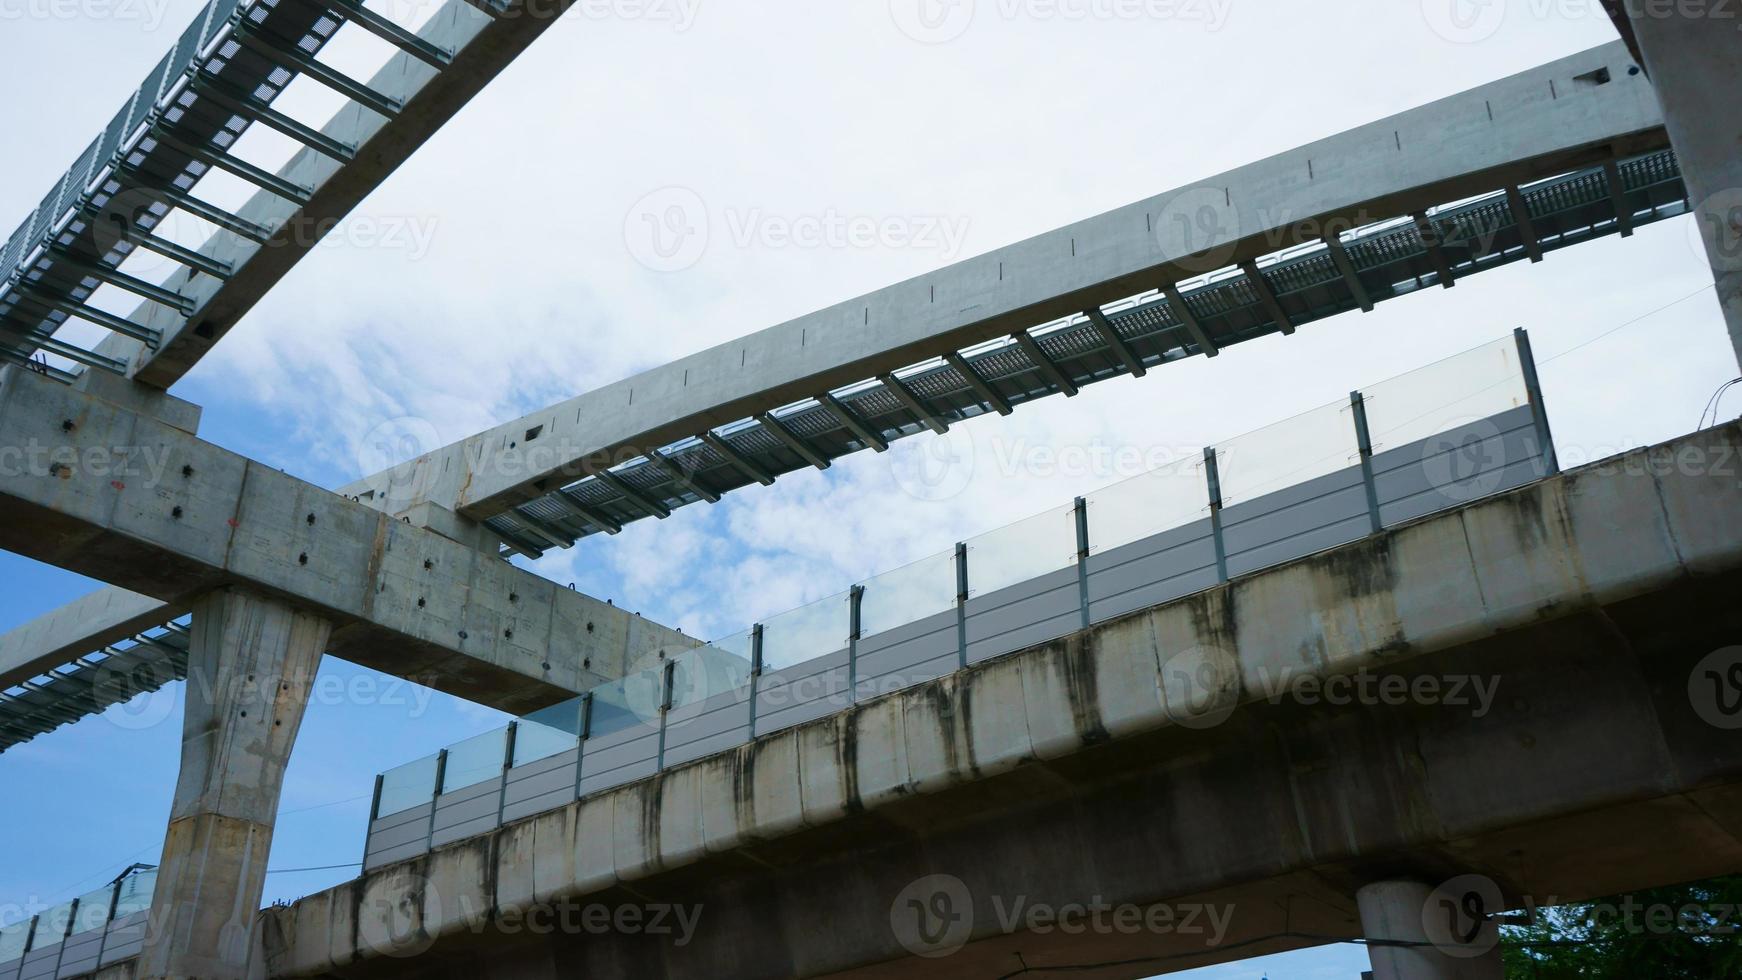 instalación de tren monorraíl en su vía elevada sobre la carretera sistema de tránsito ferroviario rápido actualmente en construcción foto